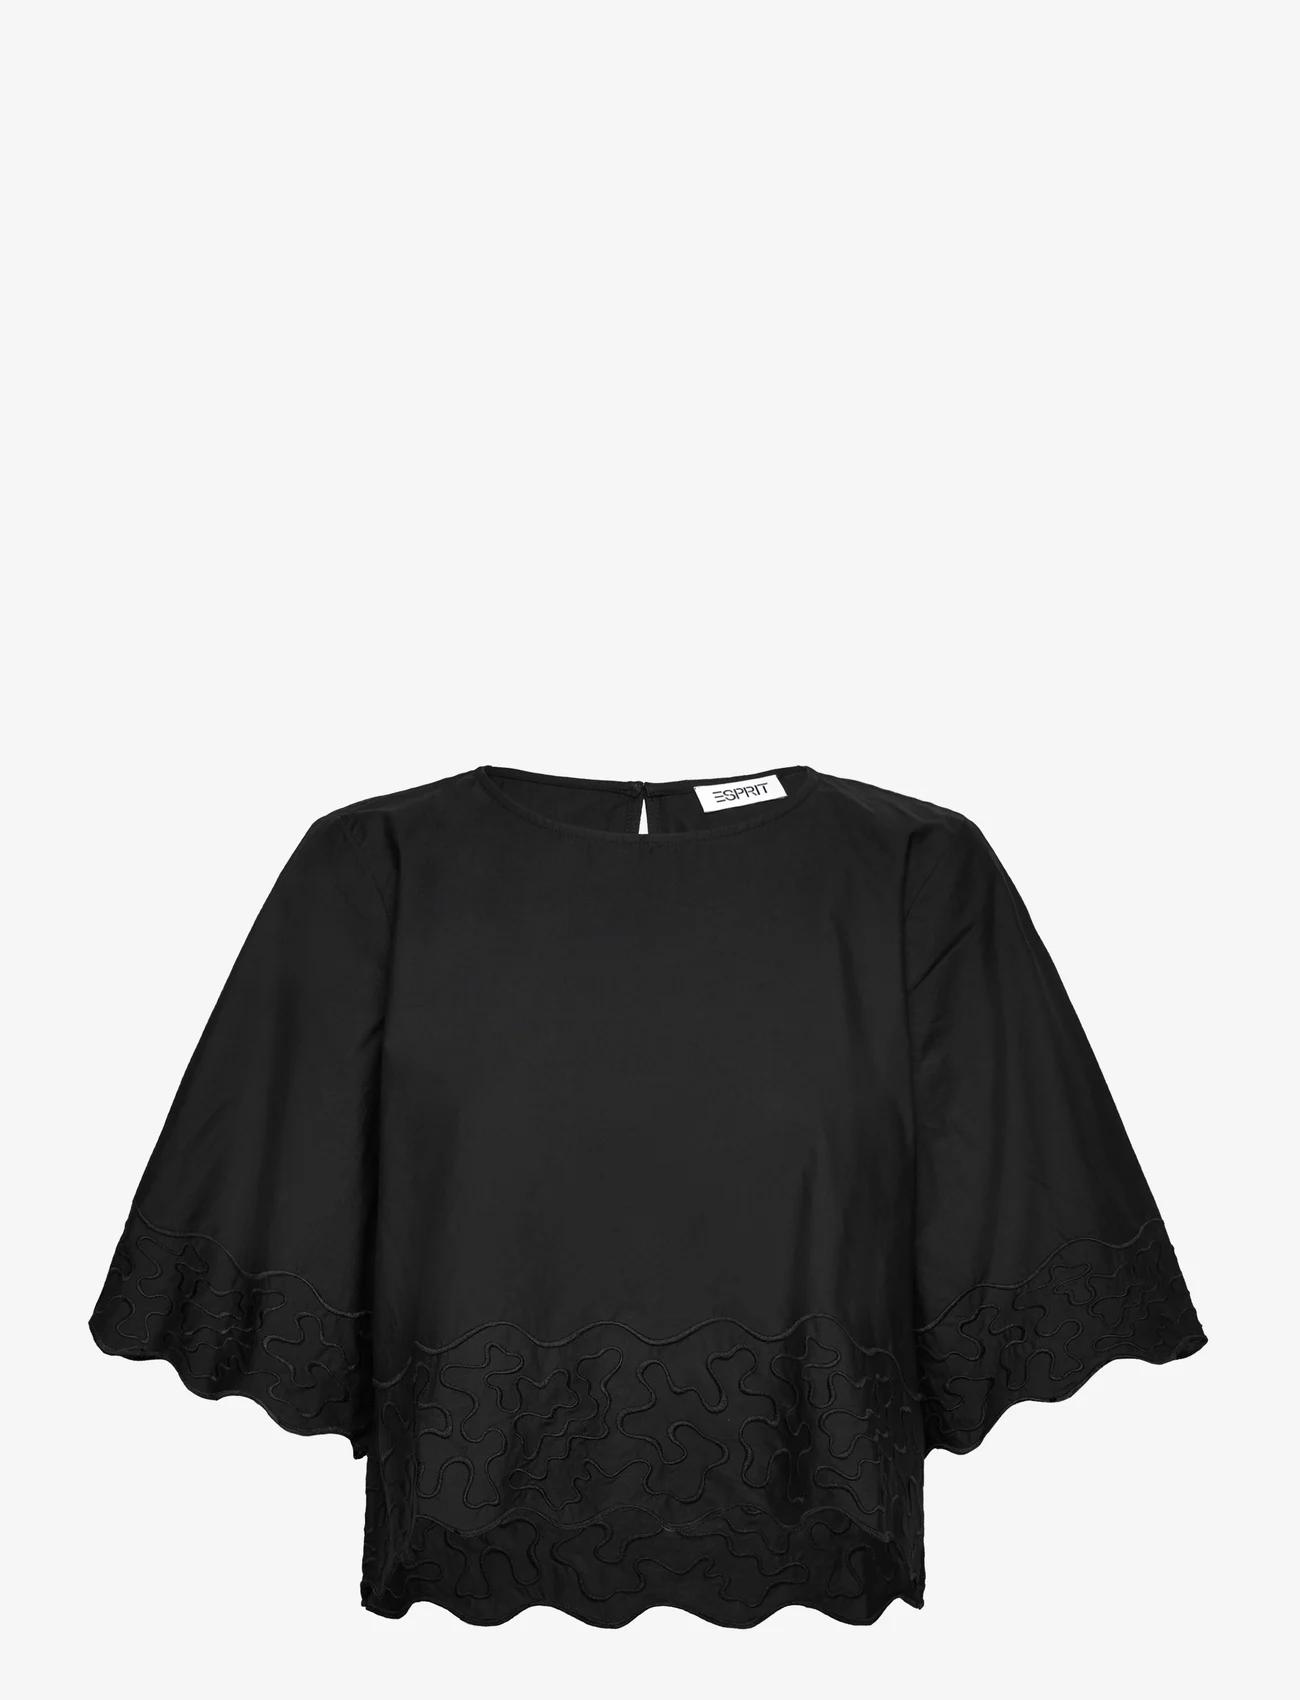 Esprit Casual - Blouses woven - langärmlige blusen - black - 0